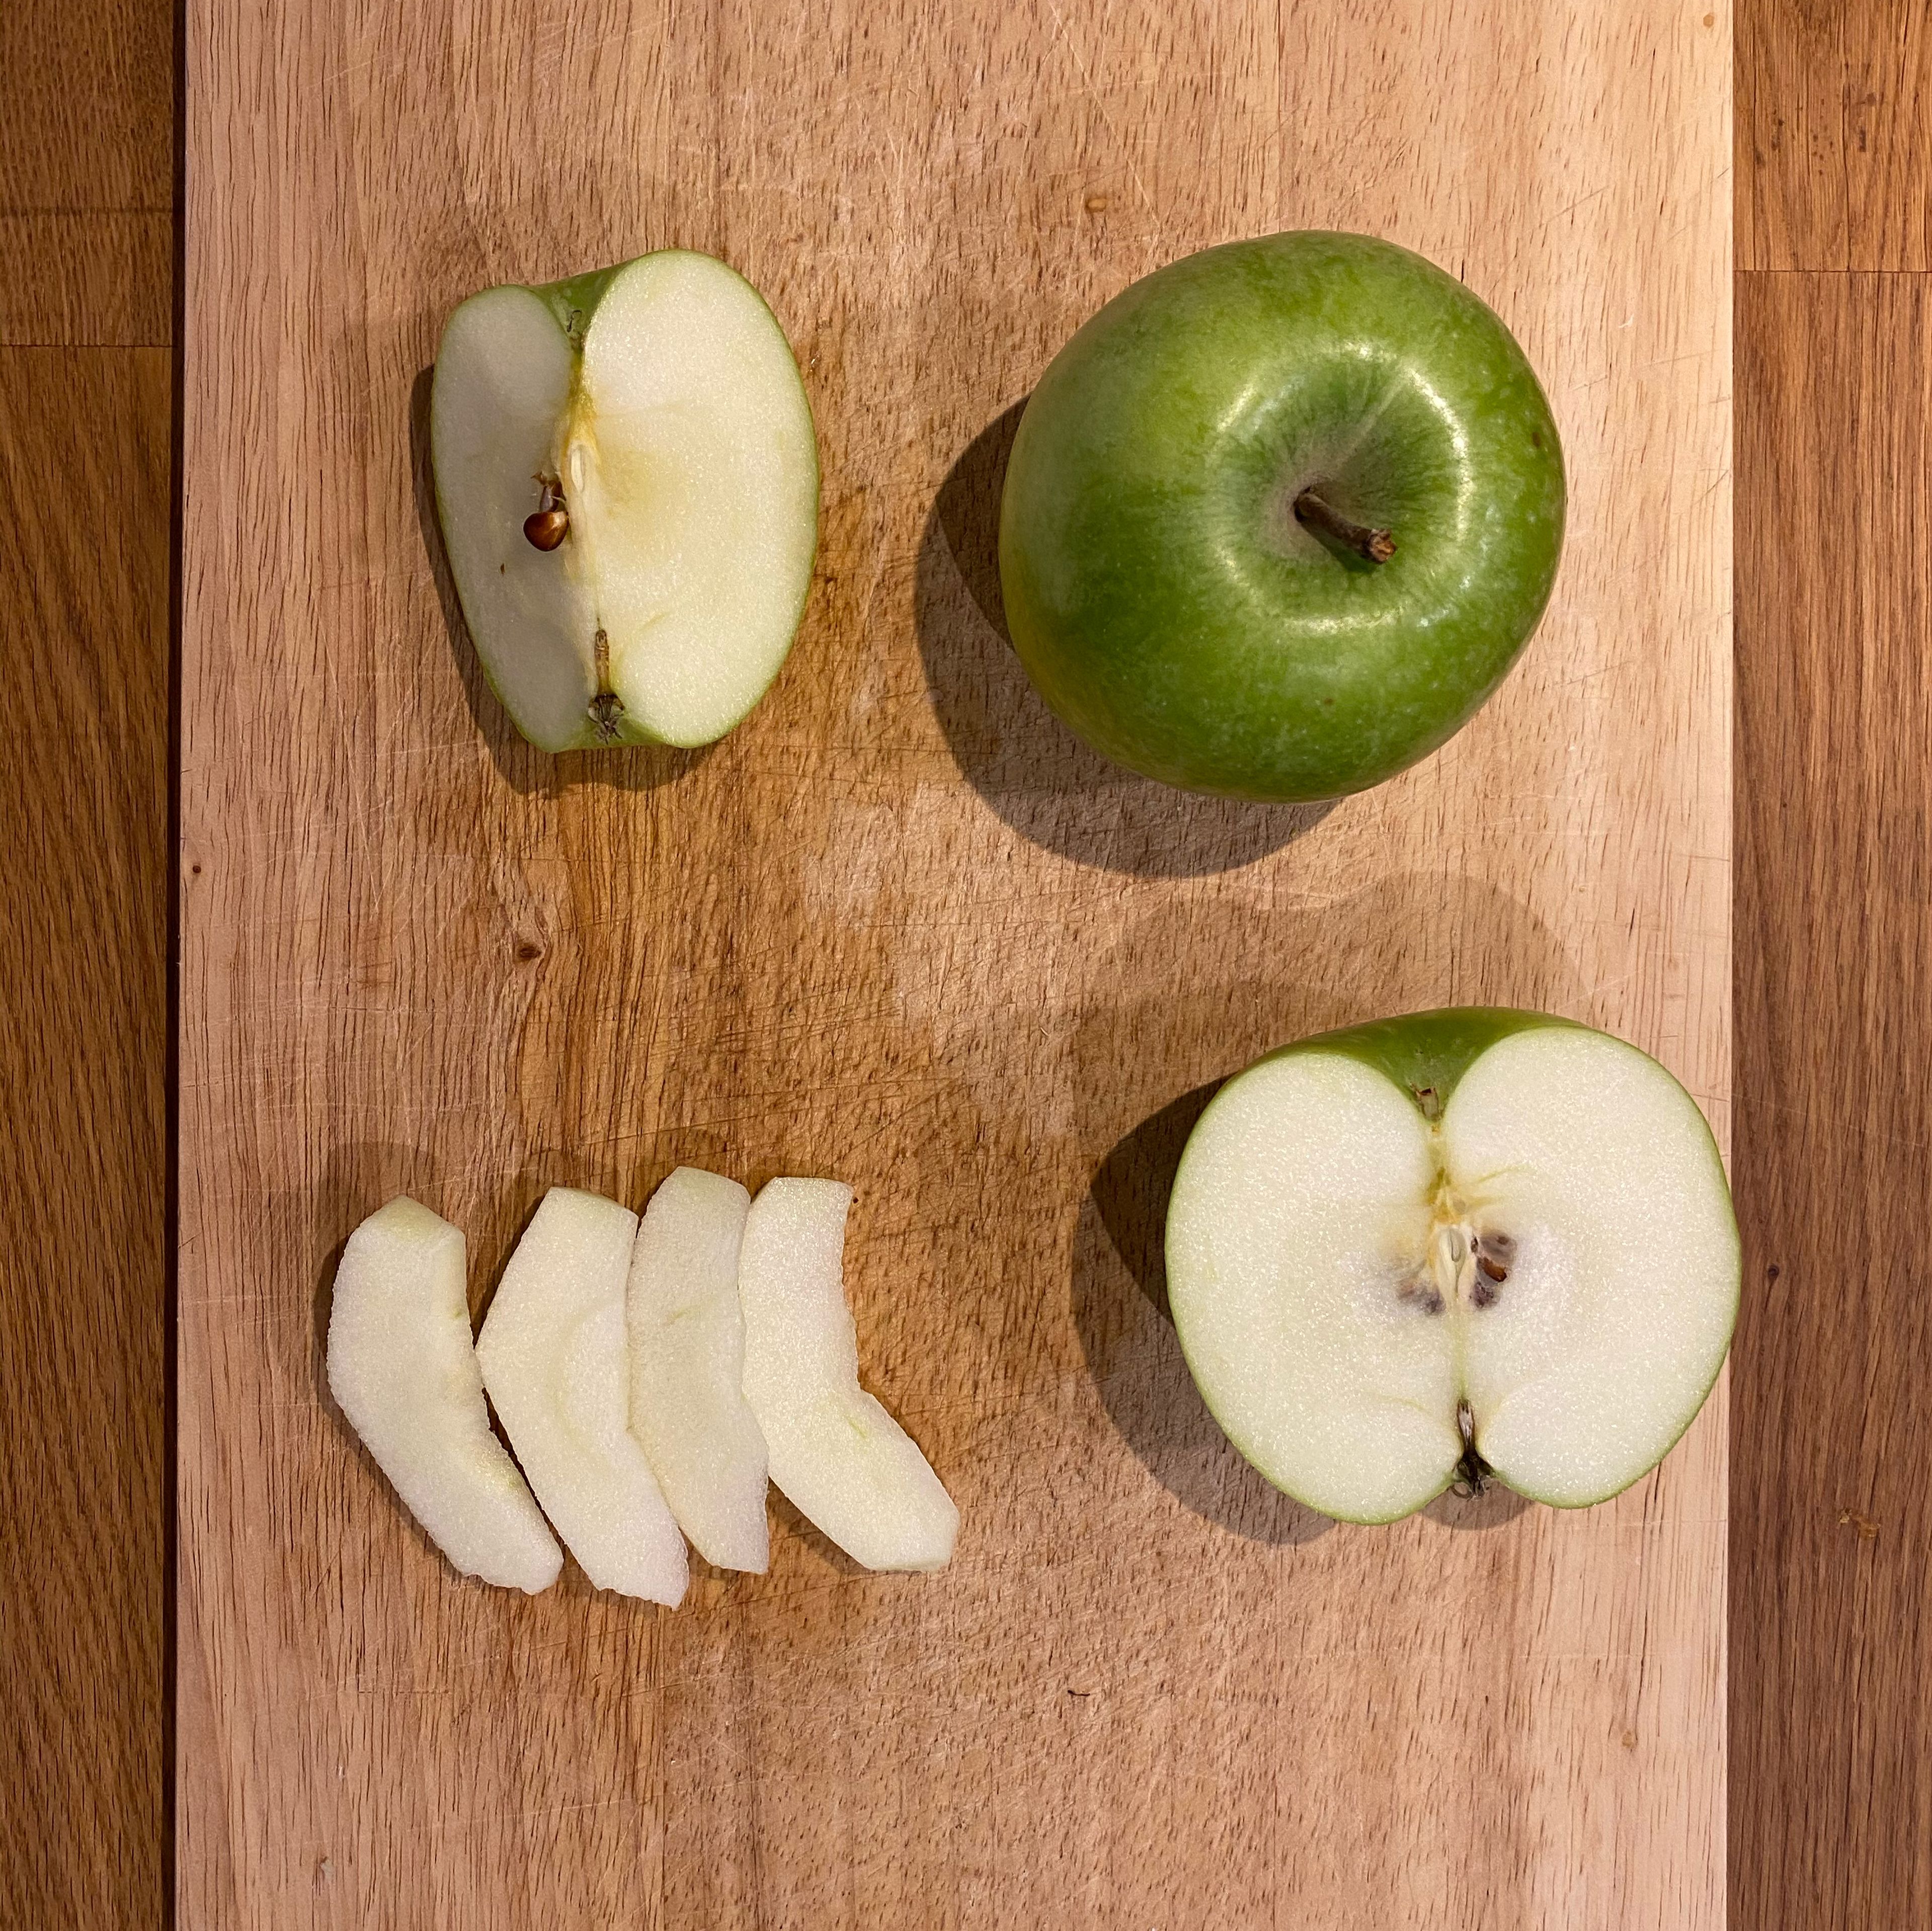 Die Äpfel entkernen und schälen, in max. 1cm dicke Spalten schneiden (z.B. 16 Spalten pro Apfel). Jeweils in der Schüssel mit Marinade wenden.